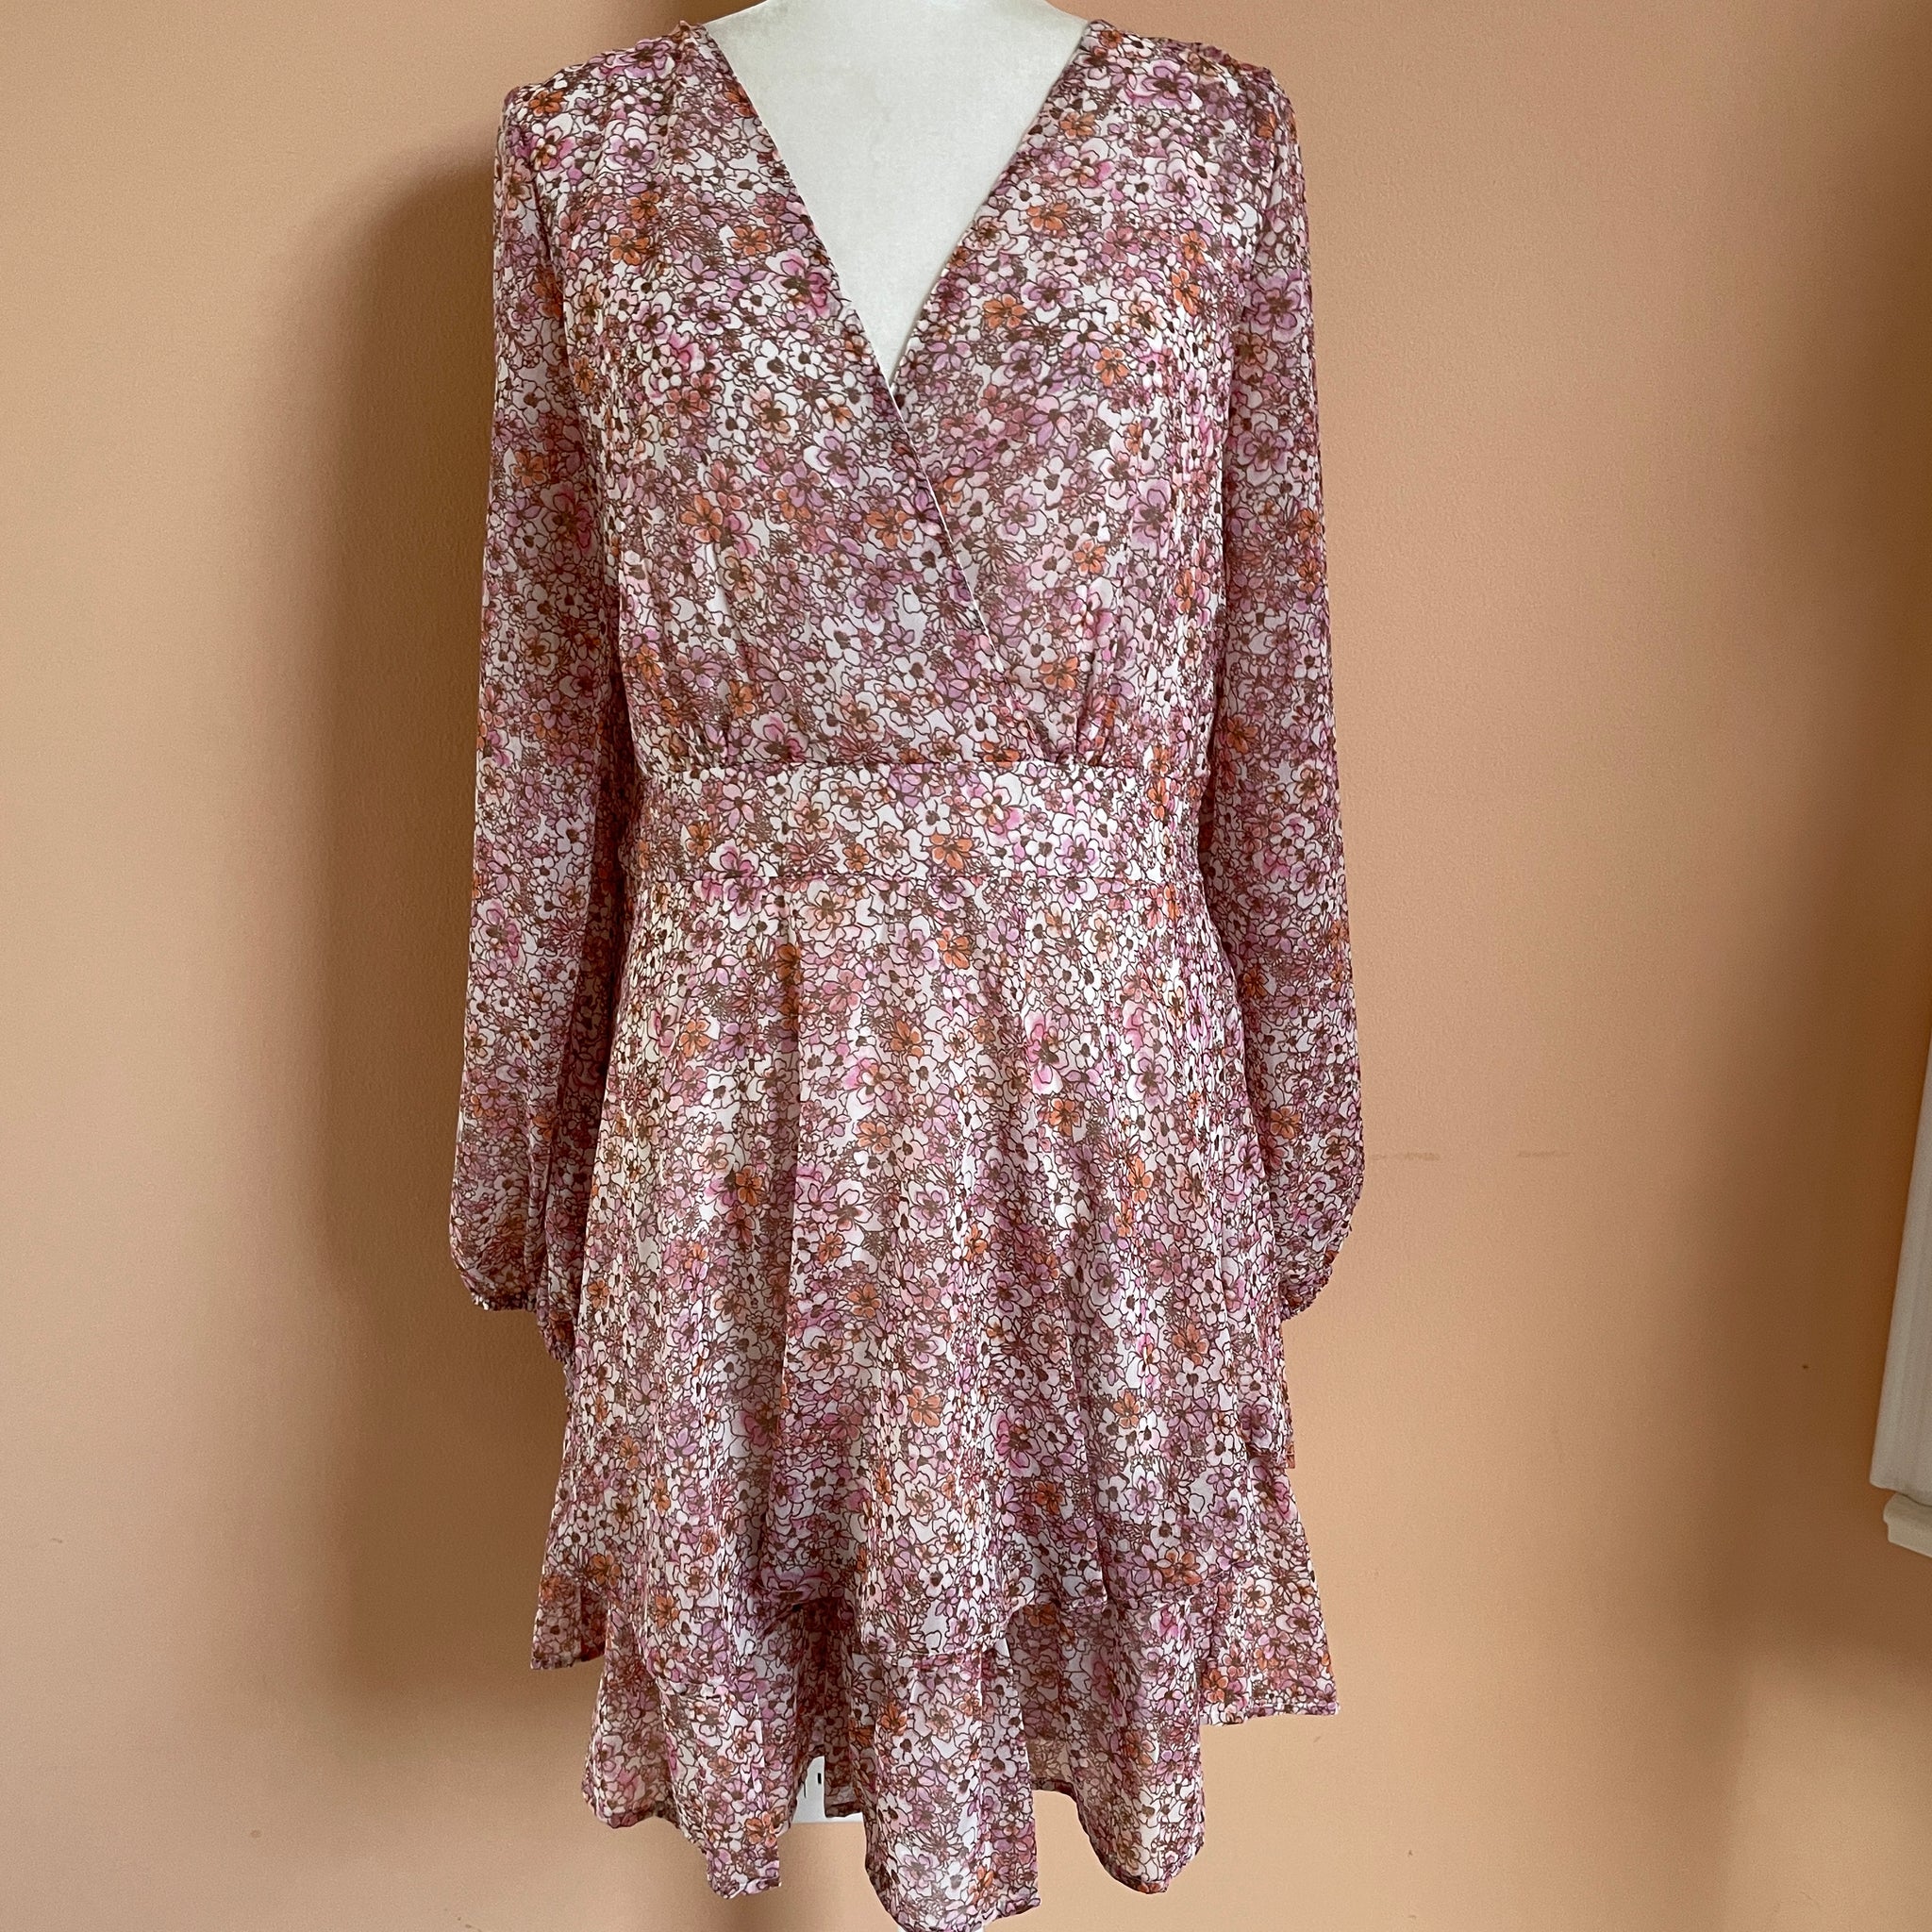 1990's Floral Dress